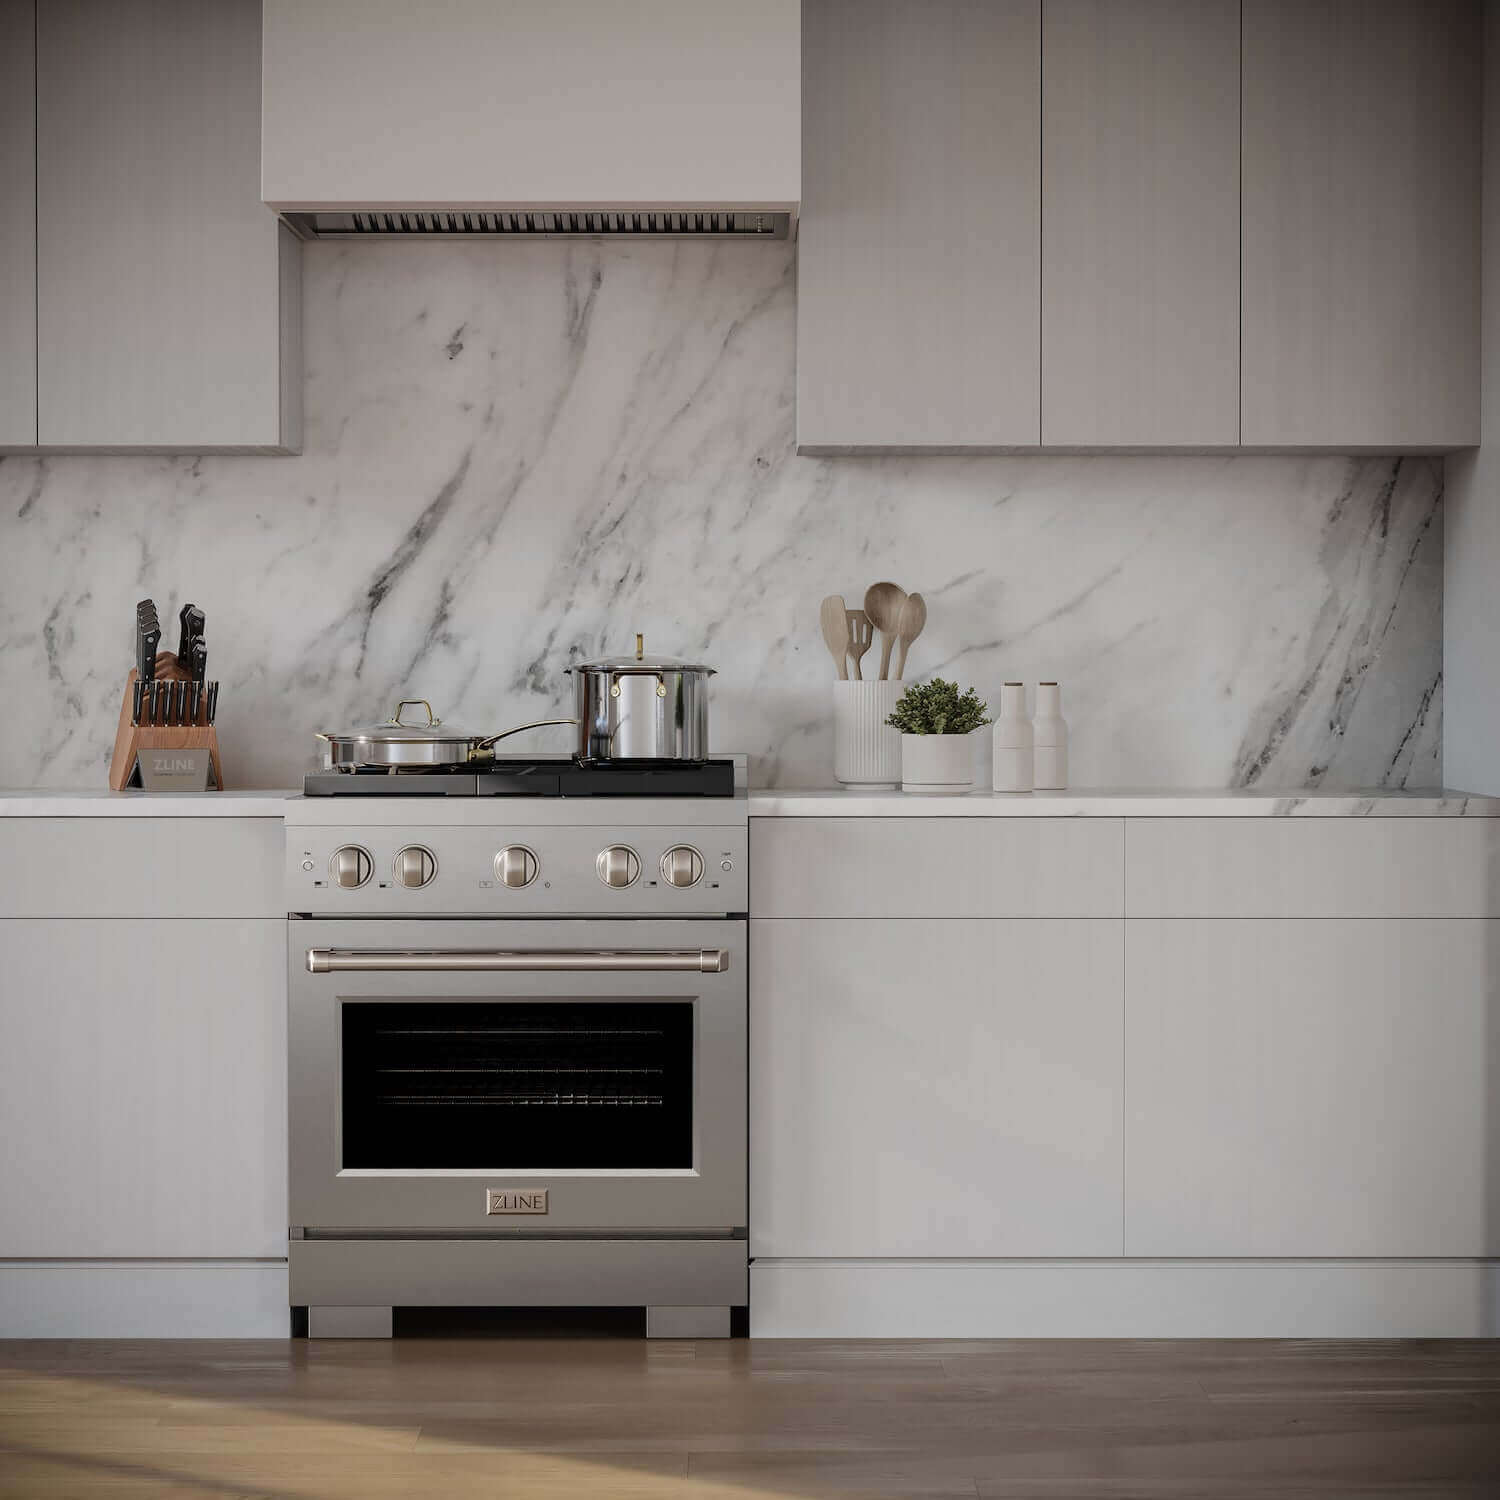 ZLINE 30" Stainless Steel Gas Range wide in a modern luxury kitchen.